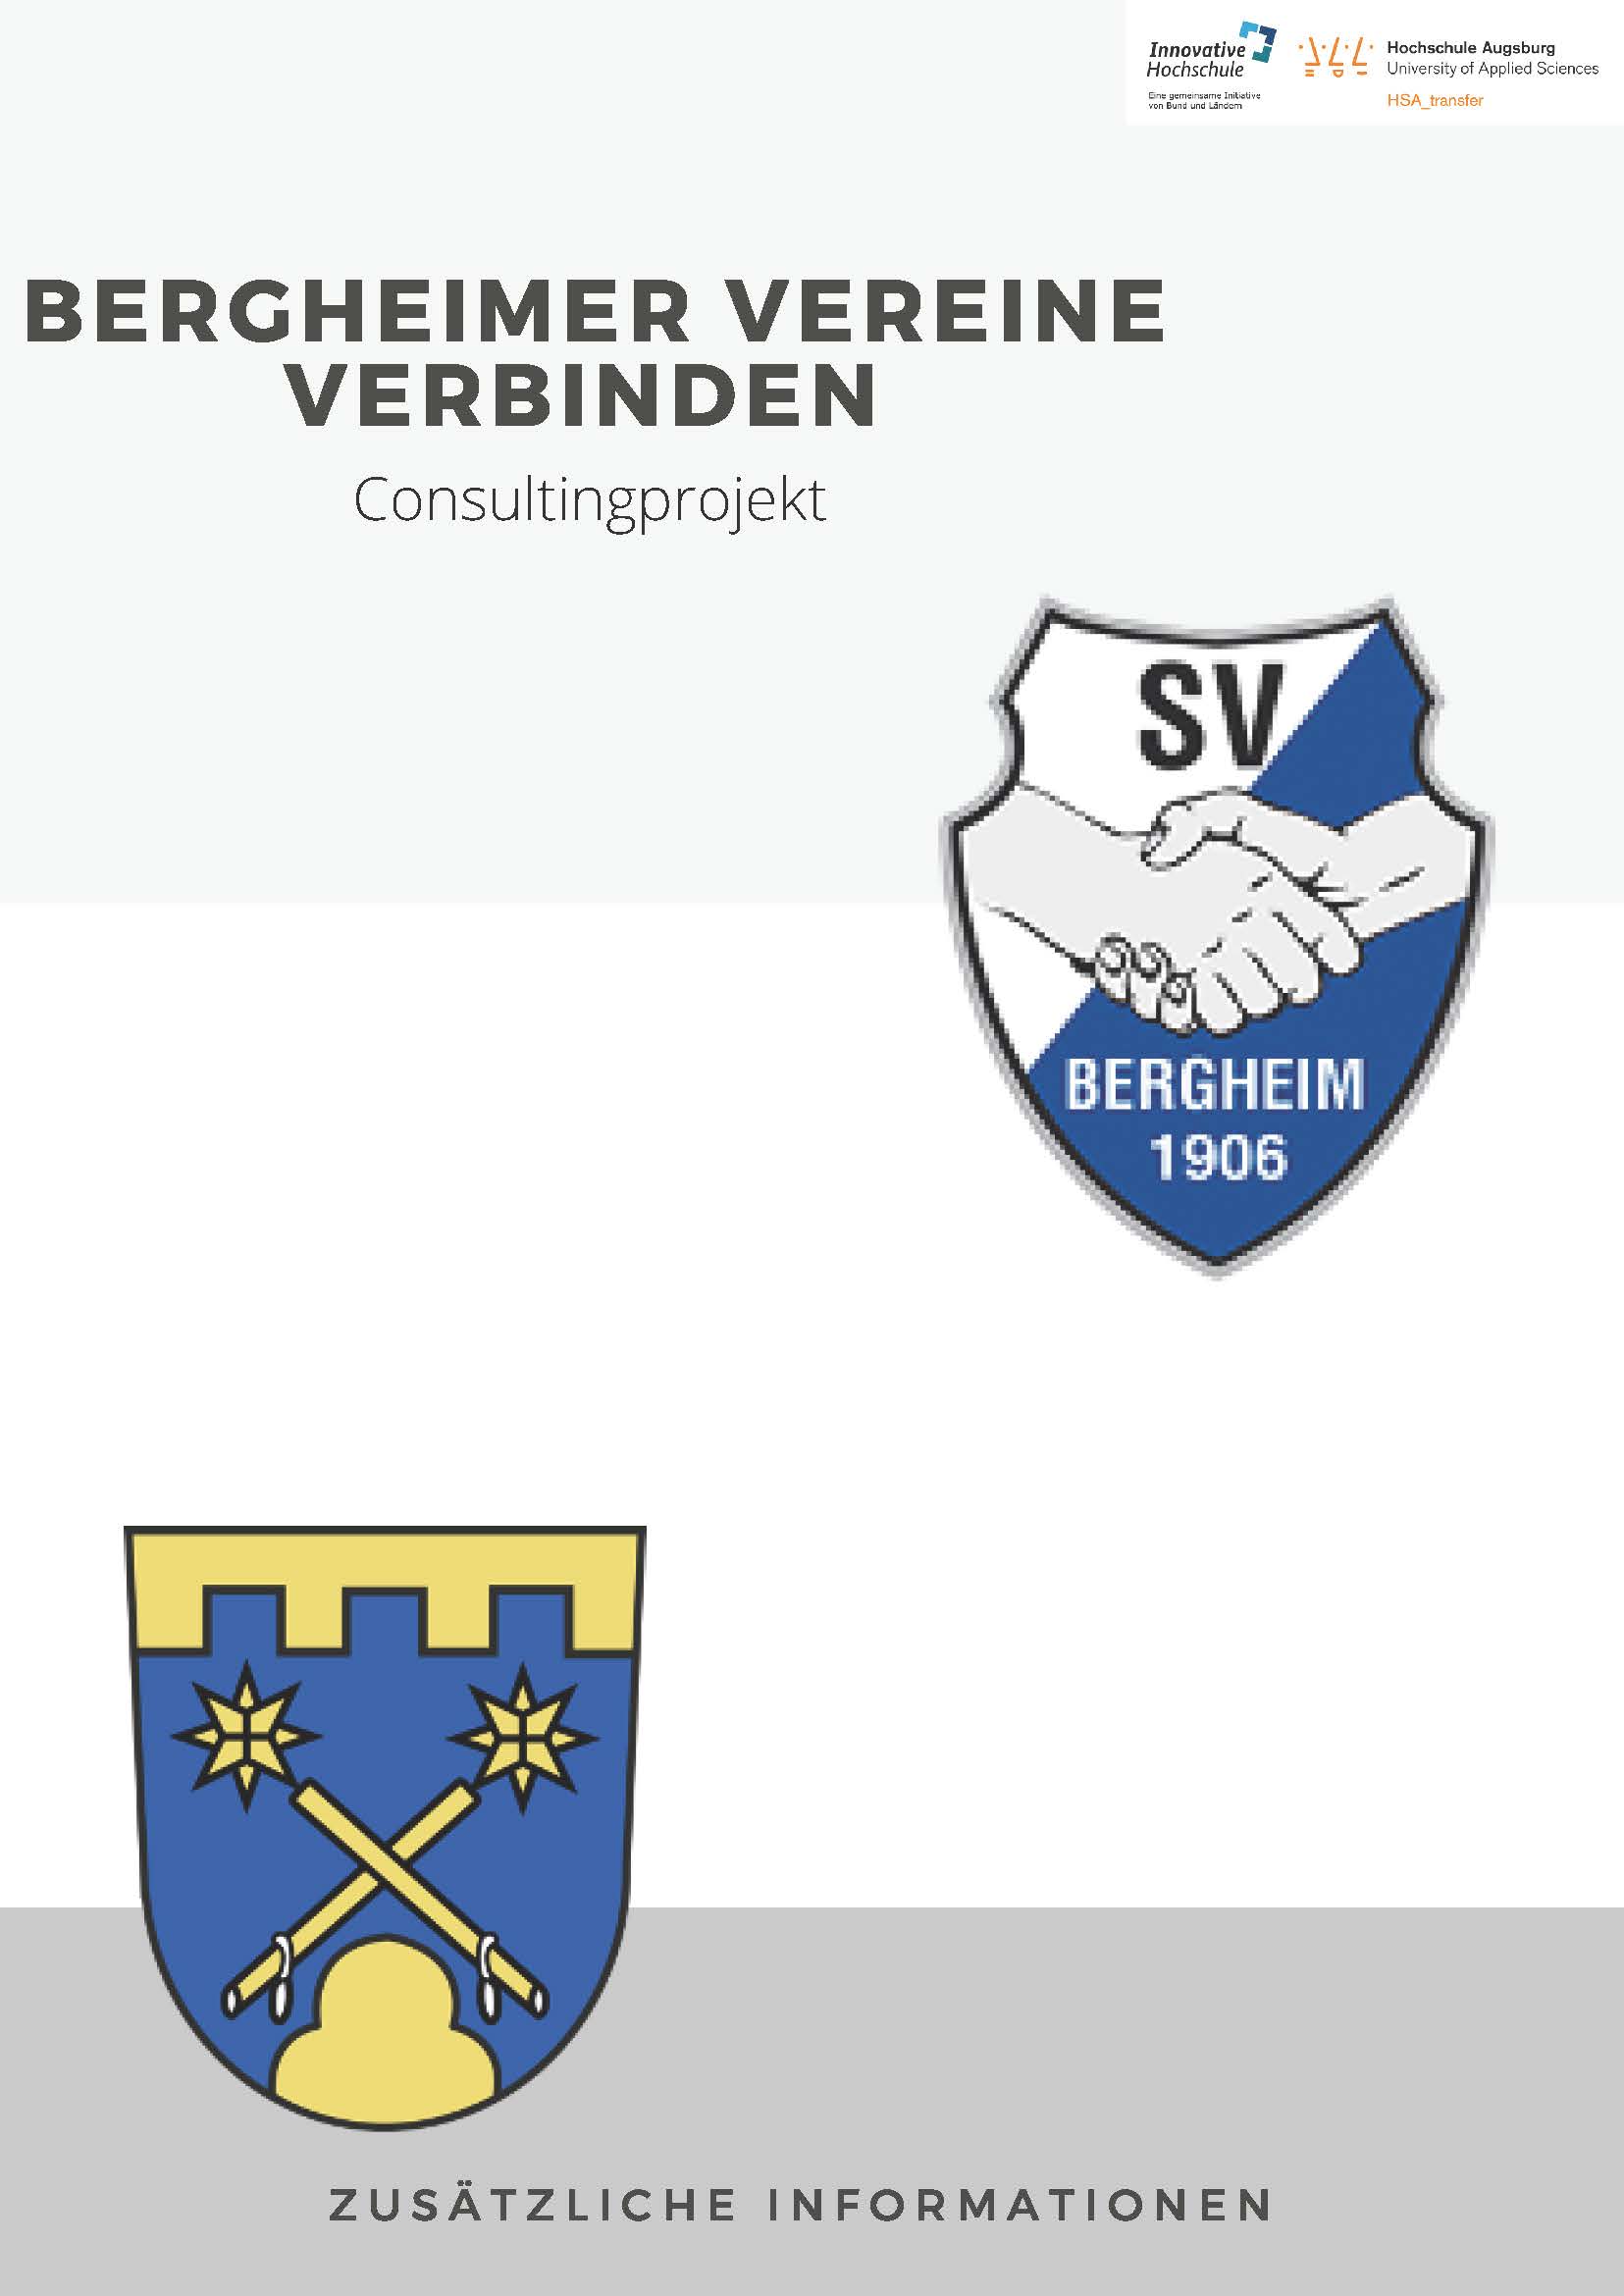 Titel: Booklet "Bergehimer Vereine verbinden" - Innovatives Sportstättenkonzept der HSA für den SV Bergheim